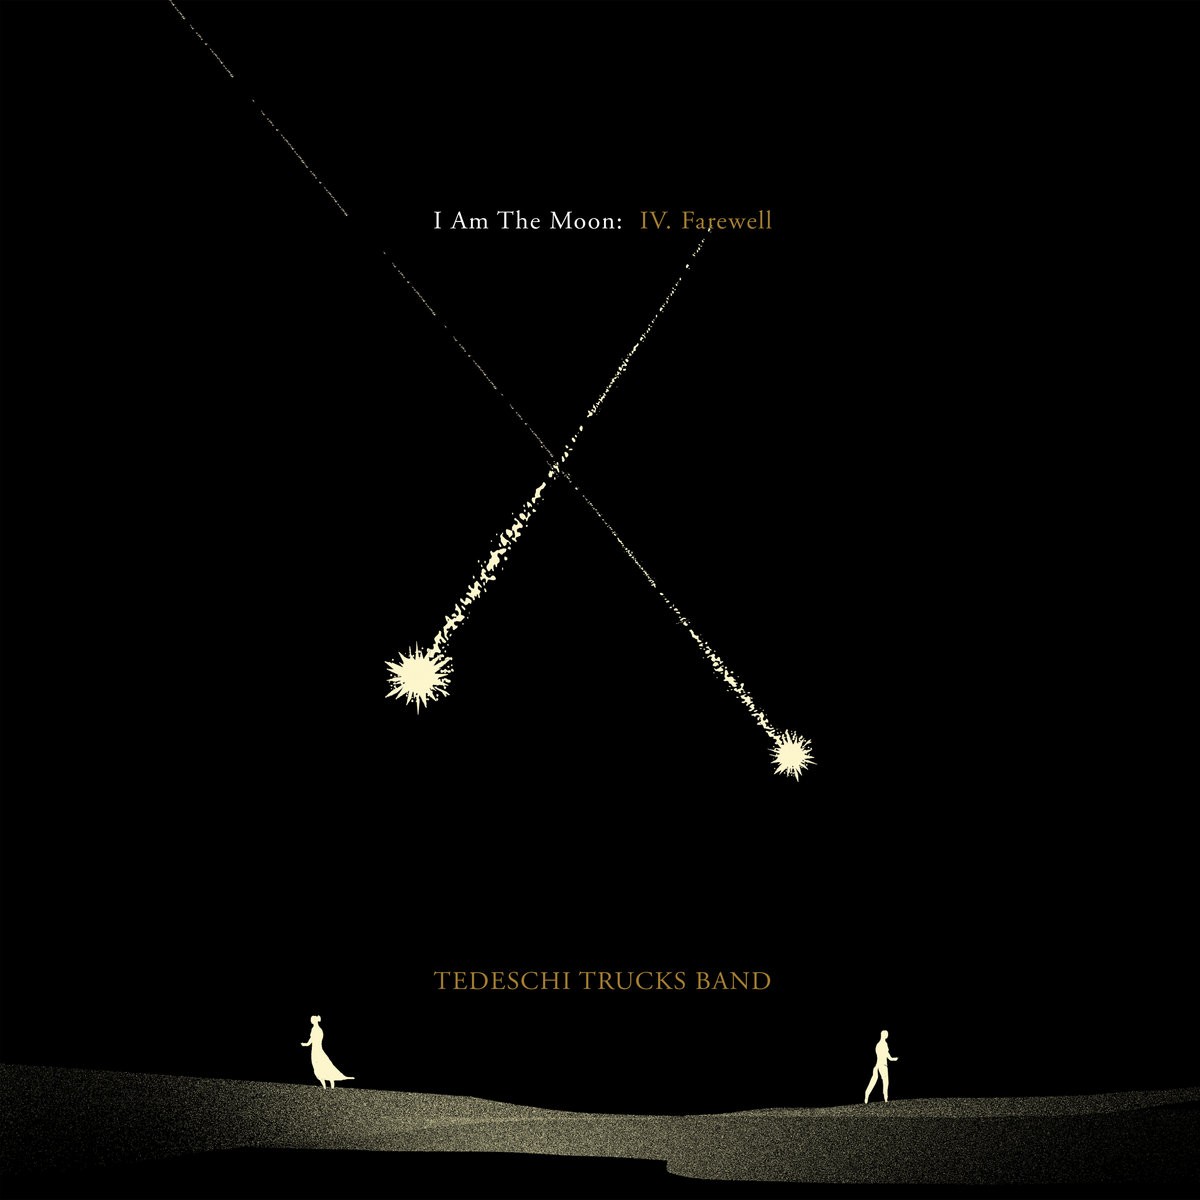 Tedeschi Trucks Band – I Am The Moon IV Farewell